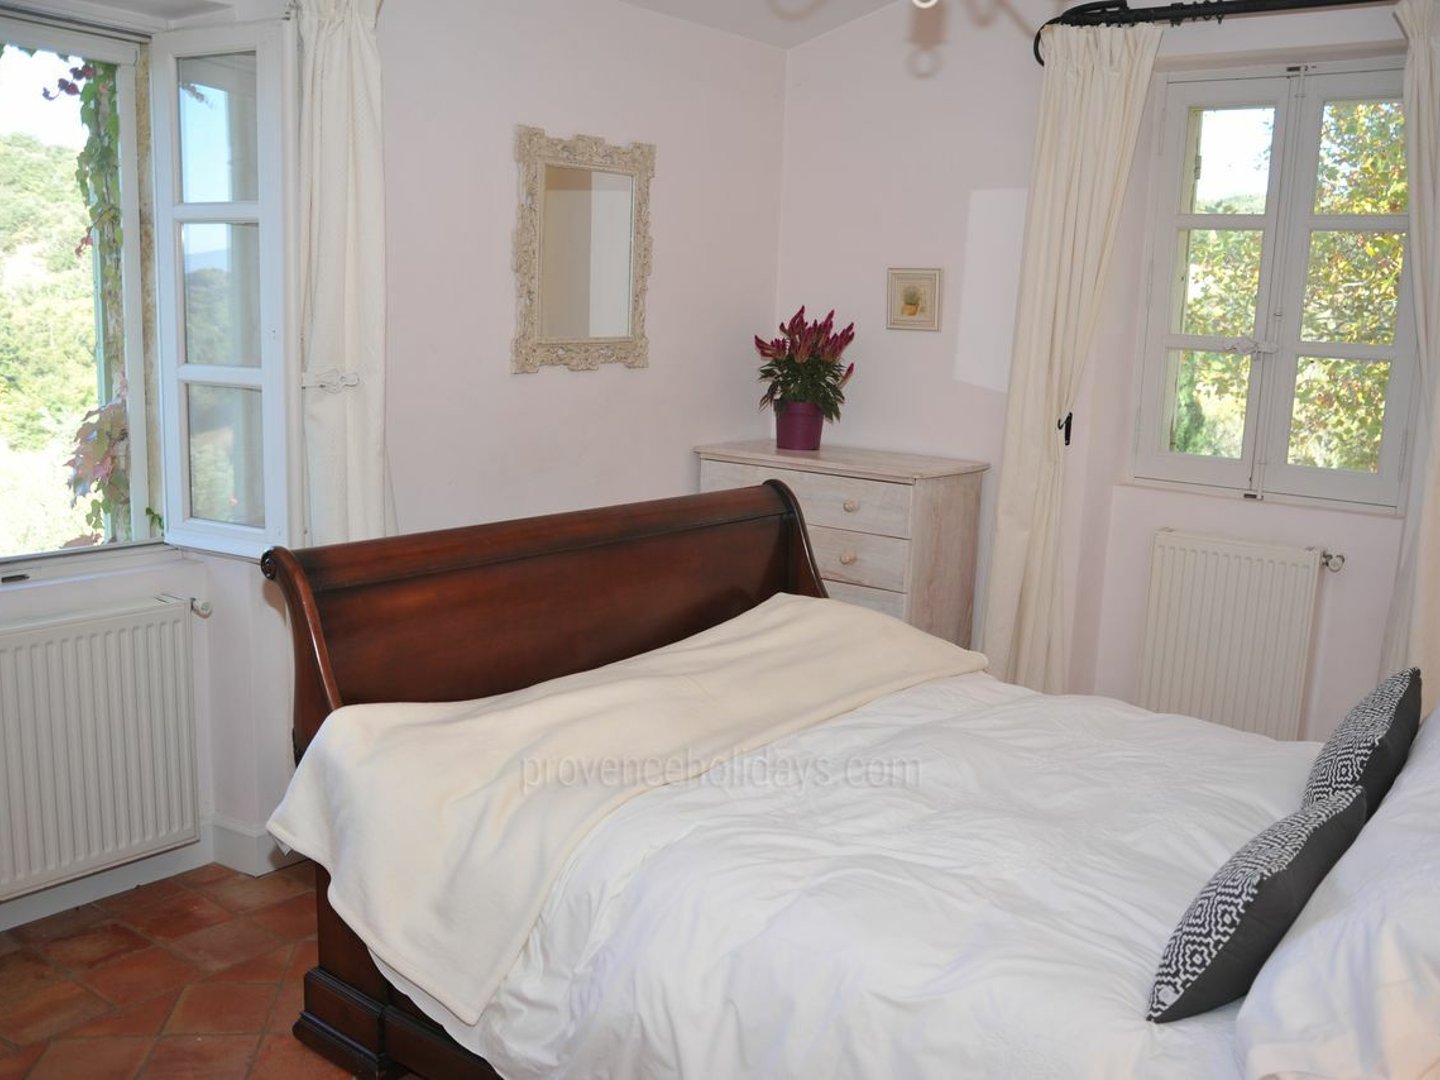 37 - Le Mas de Bonnieux: Villa: Bedroom